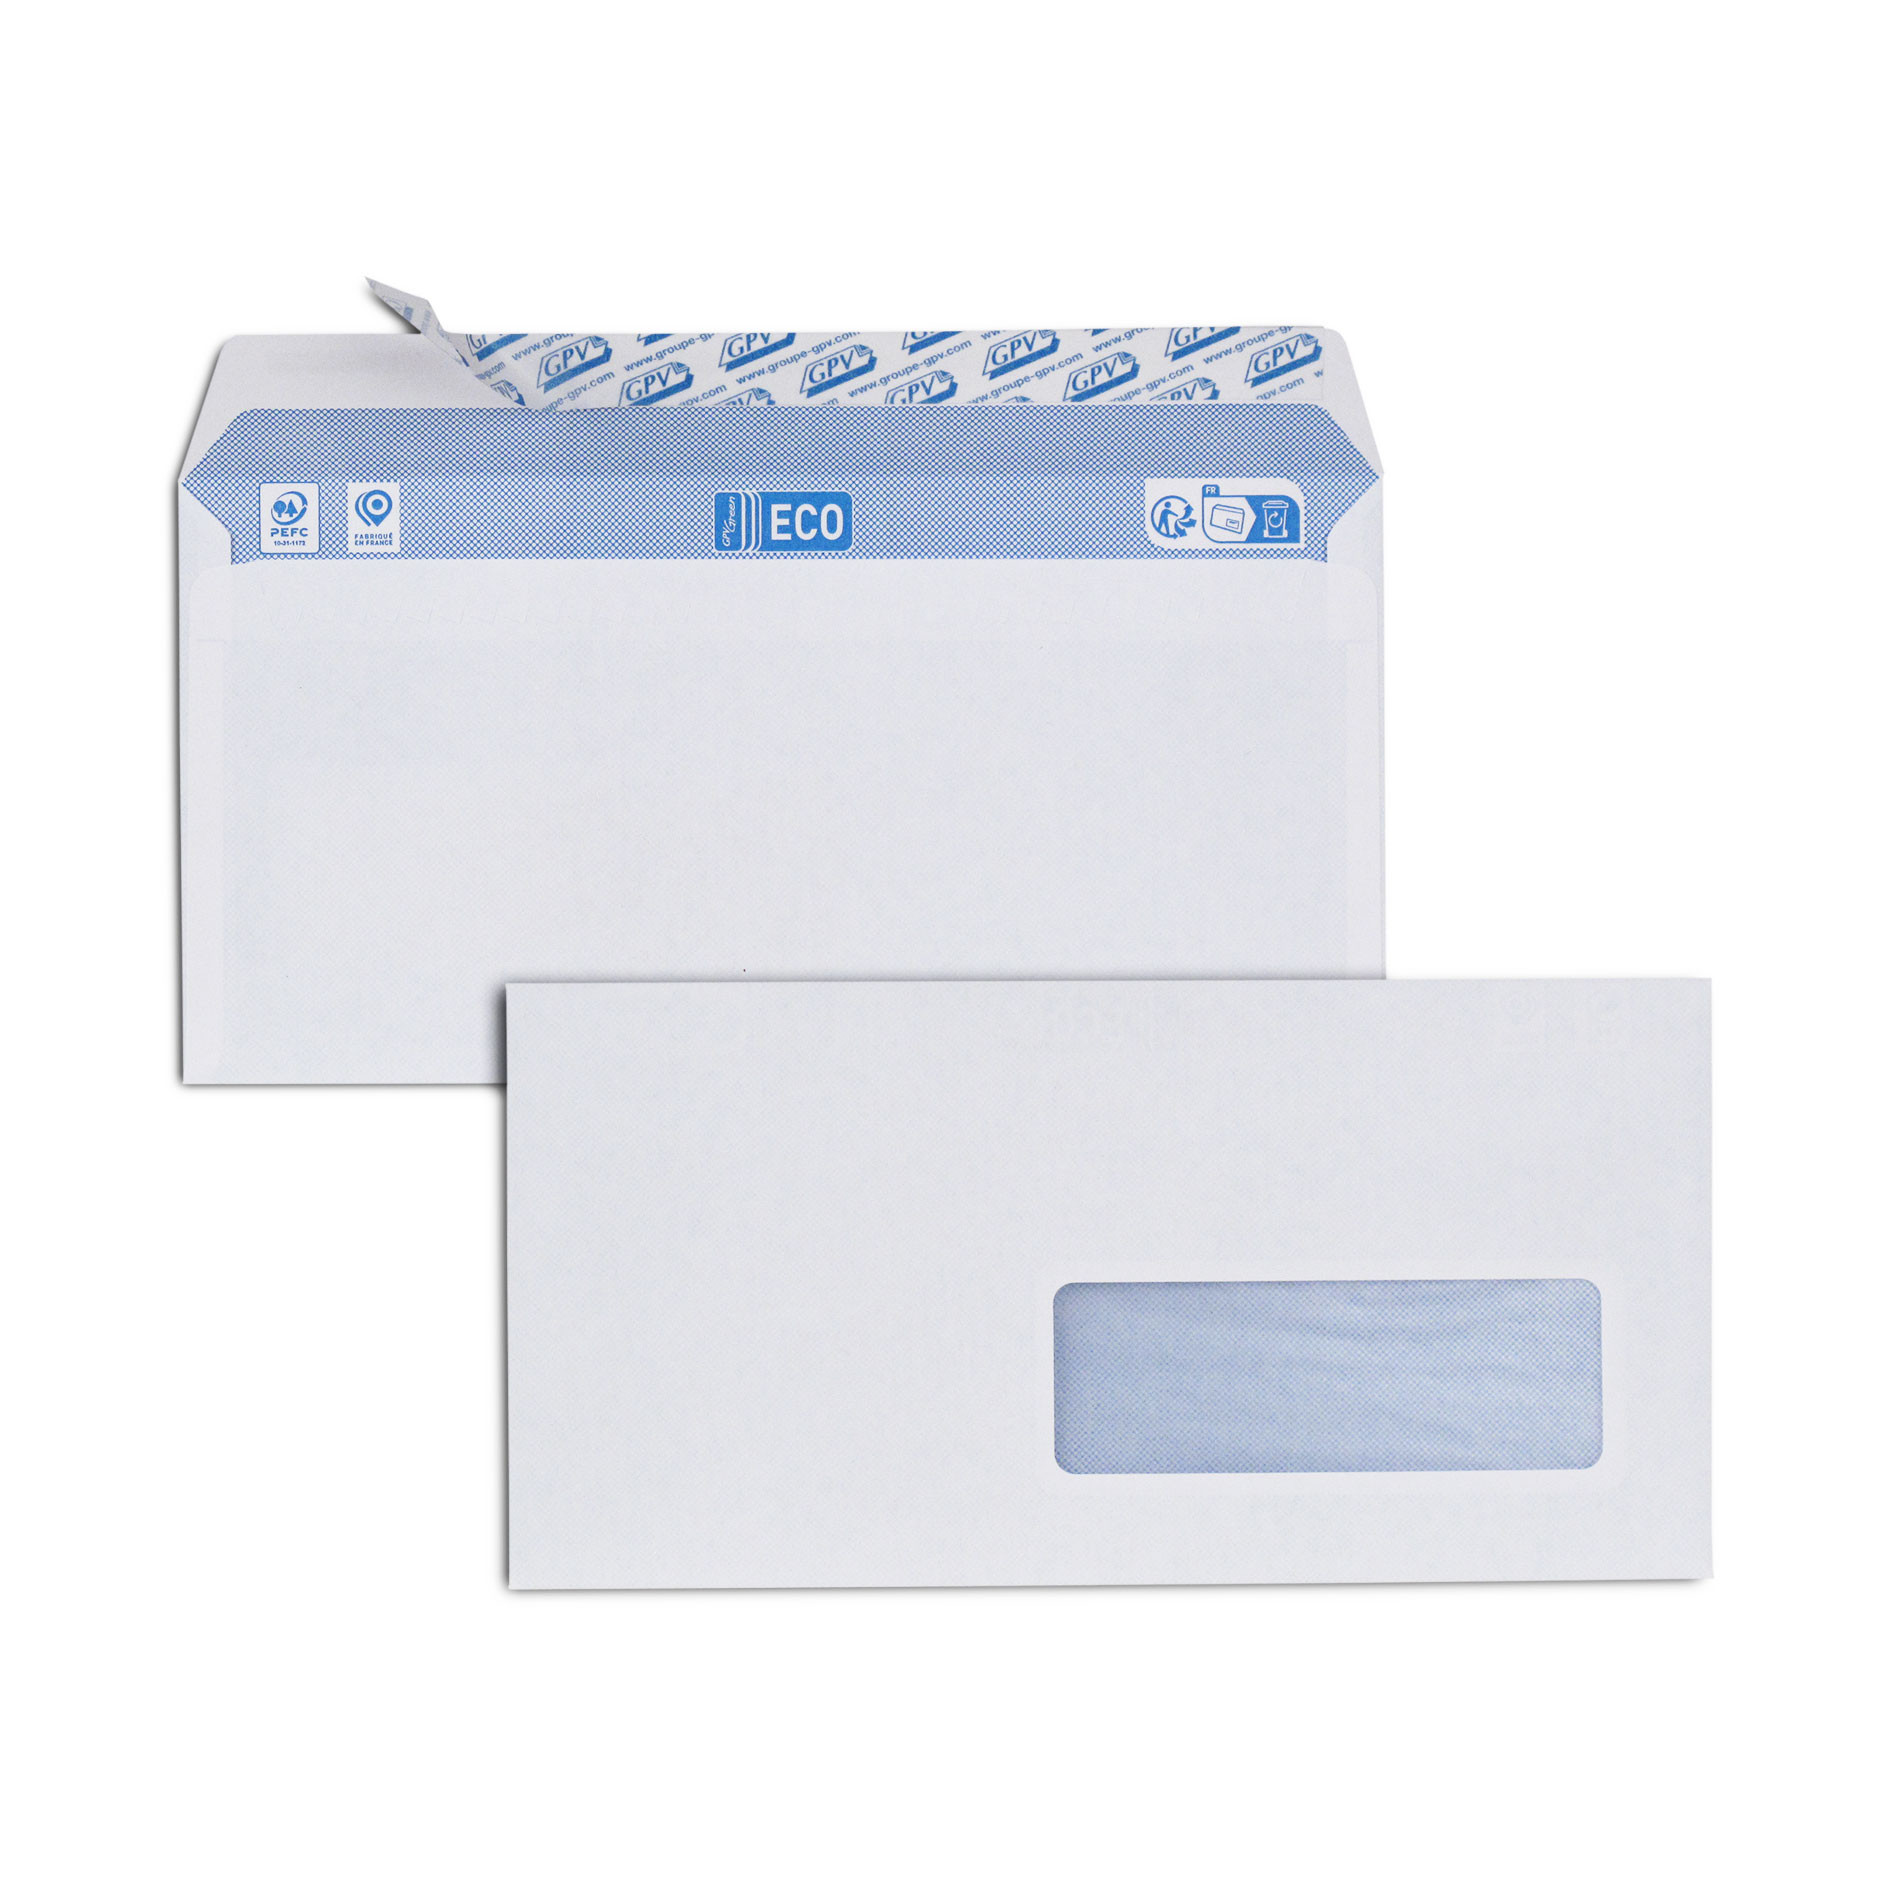 Boite de 500 enveloppes blanches DL 110x220 75 g/m² fenêtre 35x100 bande de protection